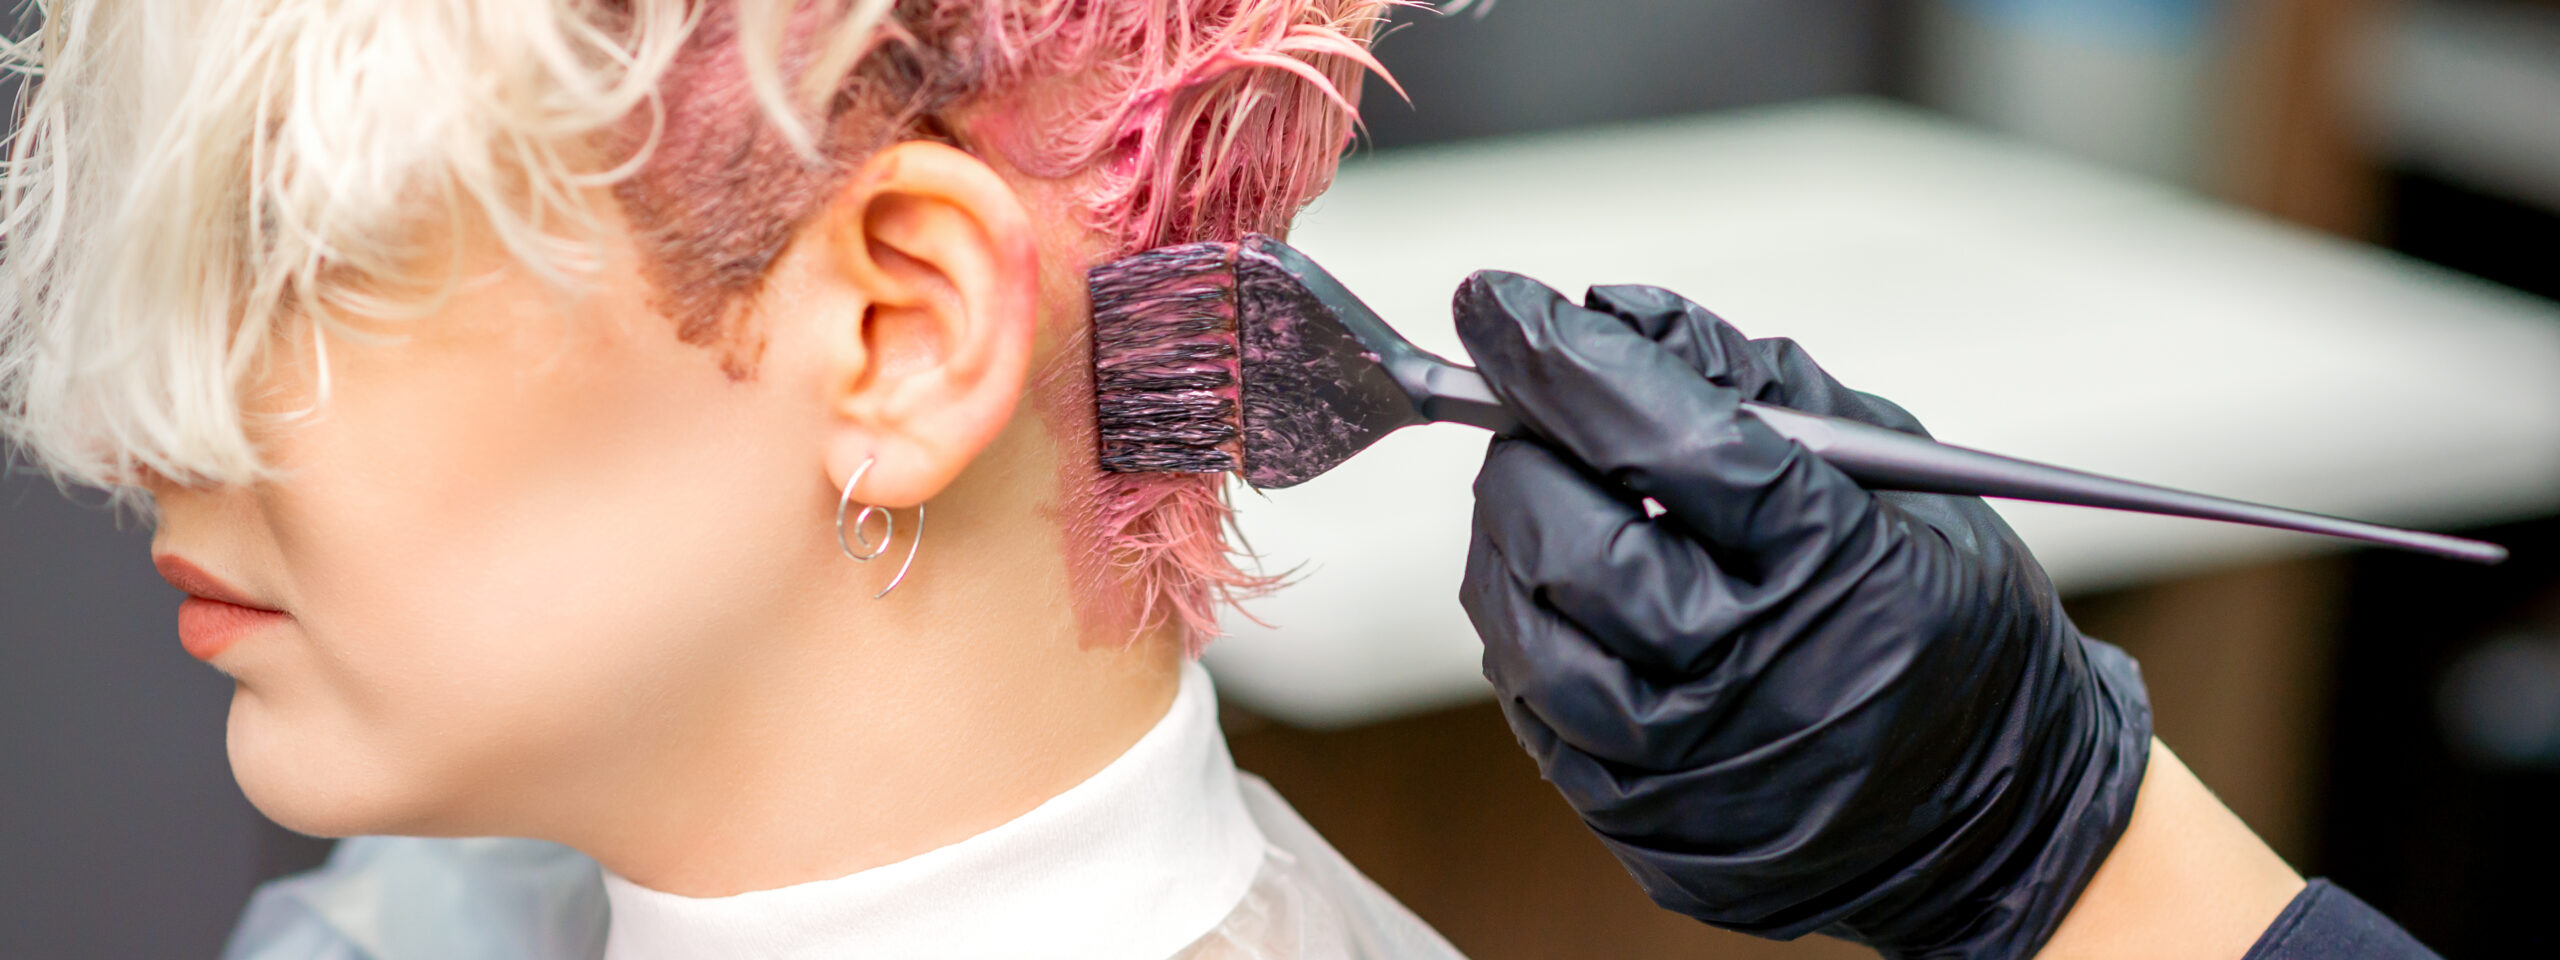 Na zdjęciu widać klientkę salonu fryzjerskiego, której fryzjerka farbuje krótkie włosy na różowo. 